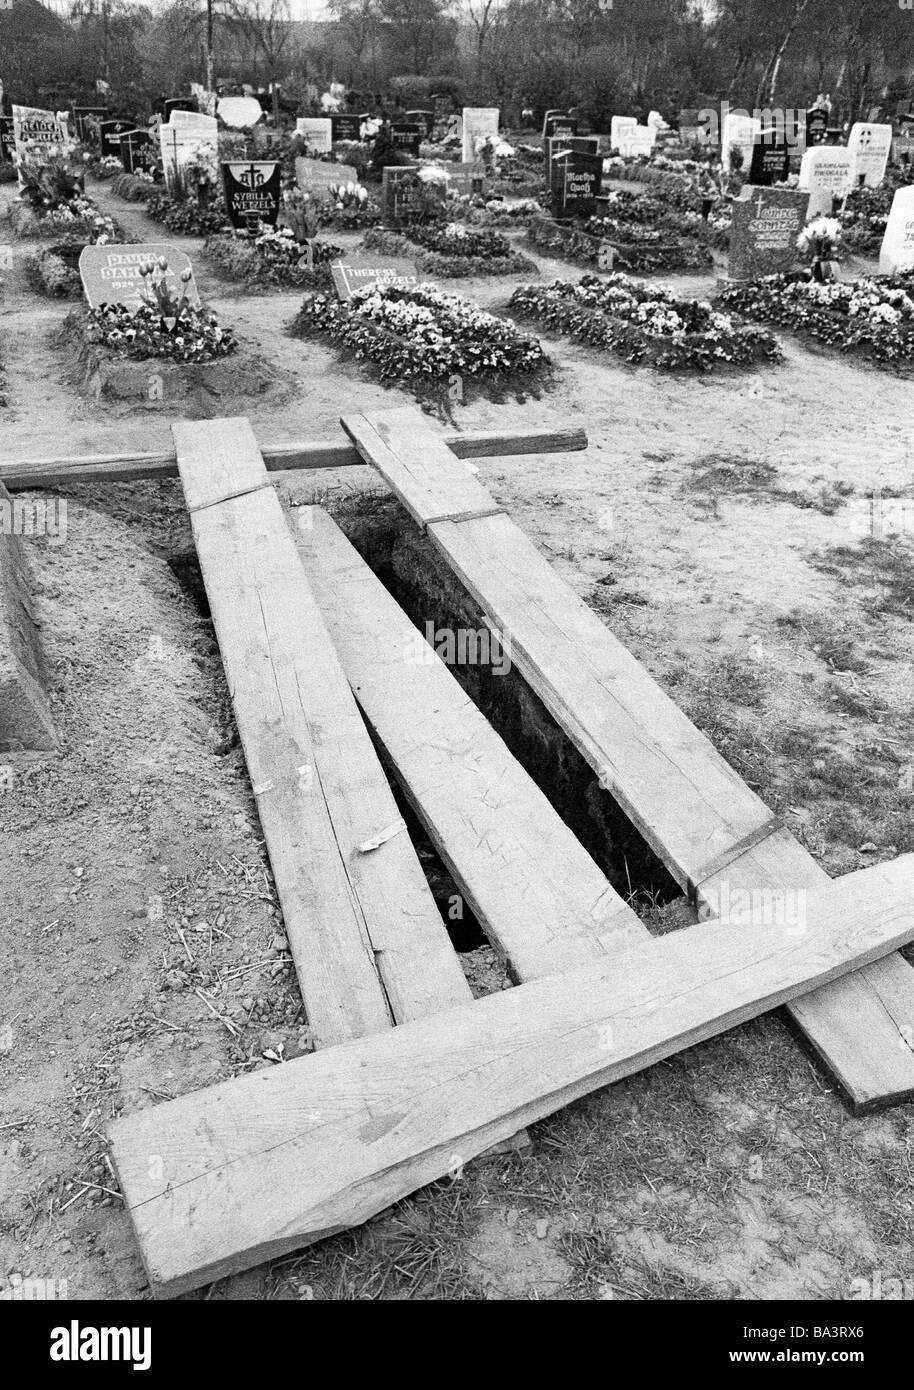 70er Jahre, schwarz / weiß Foto, Menschen, Tod, Trauer, Friedhof, Bestattung, Grab, Planken über einem offenen Grab Stockfoto